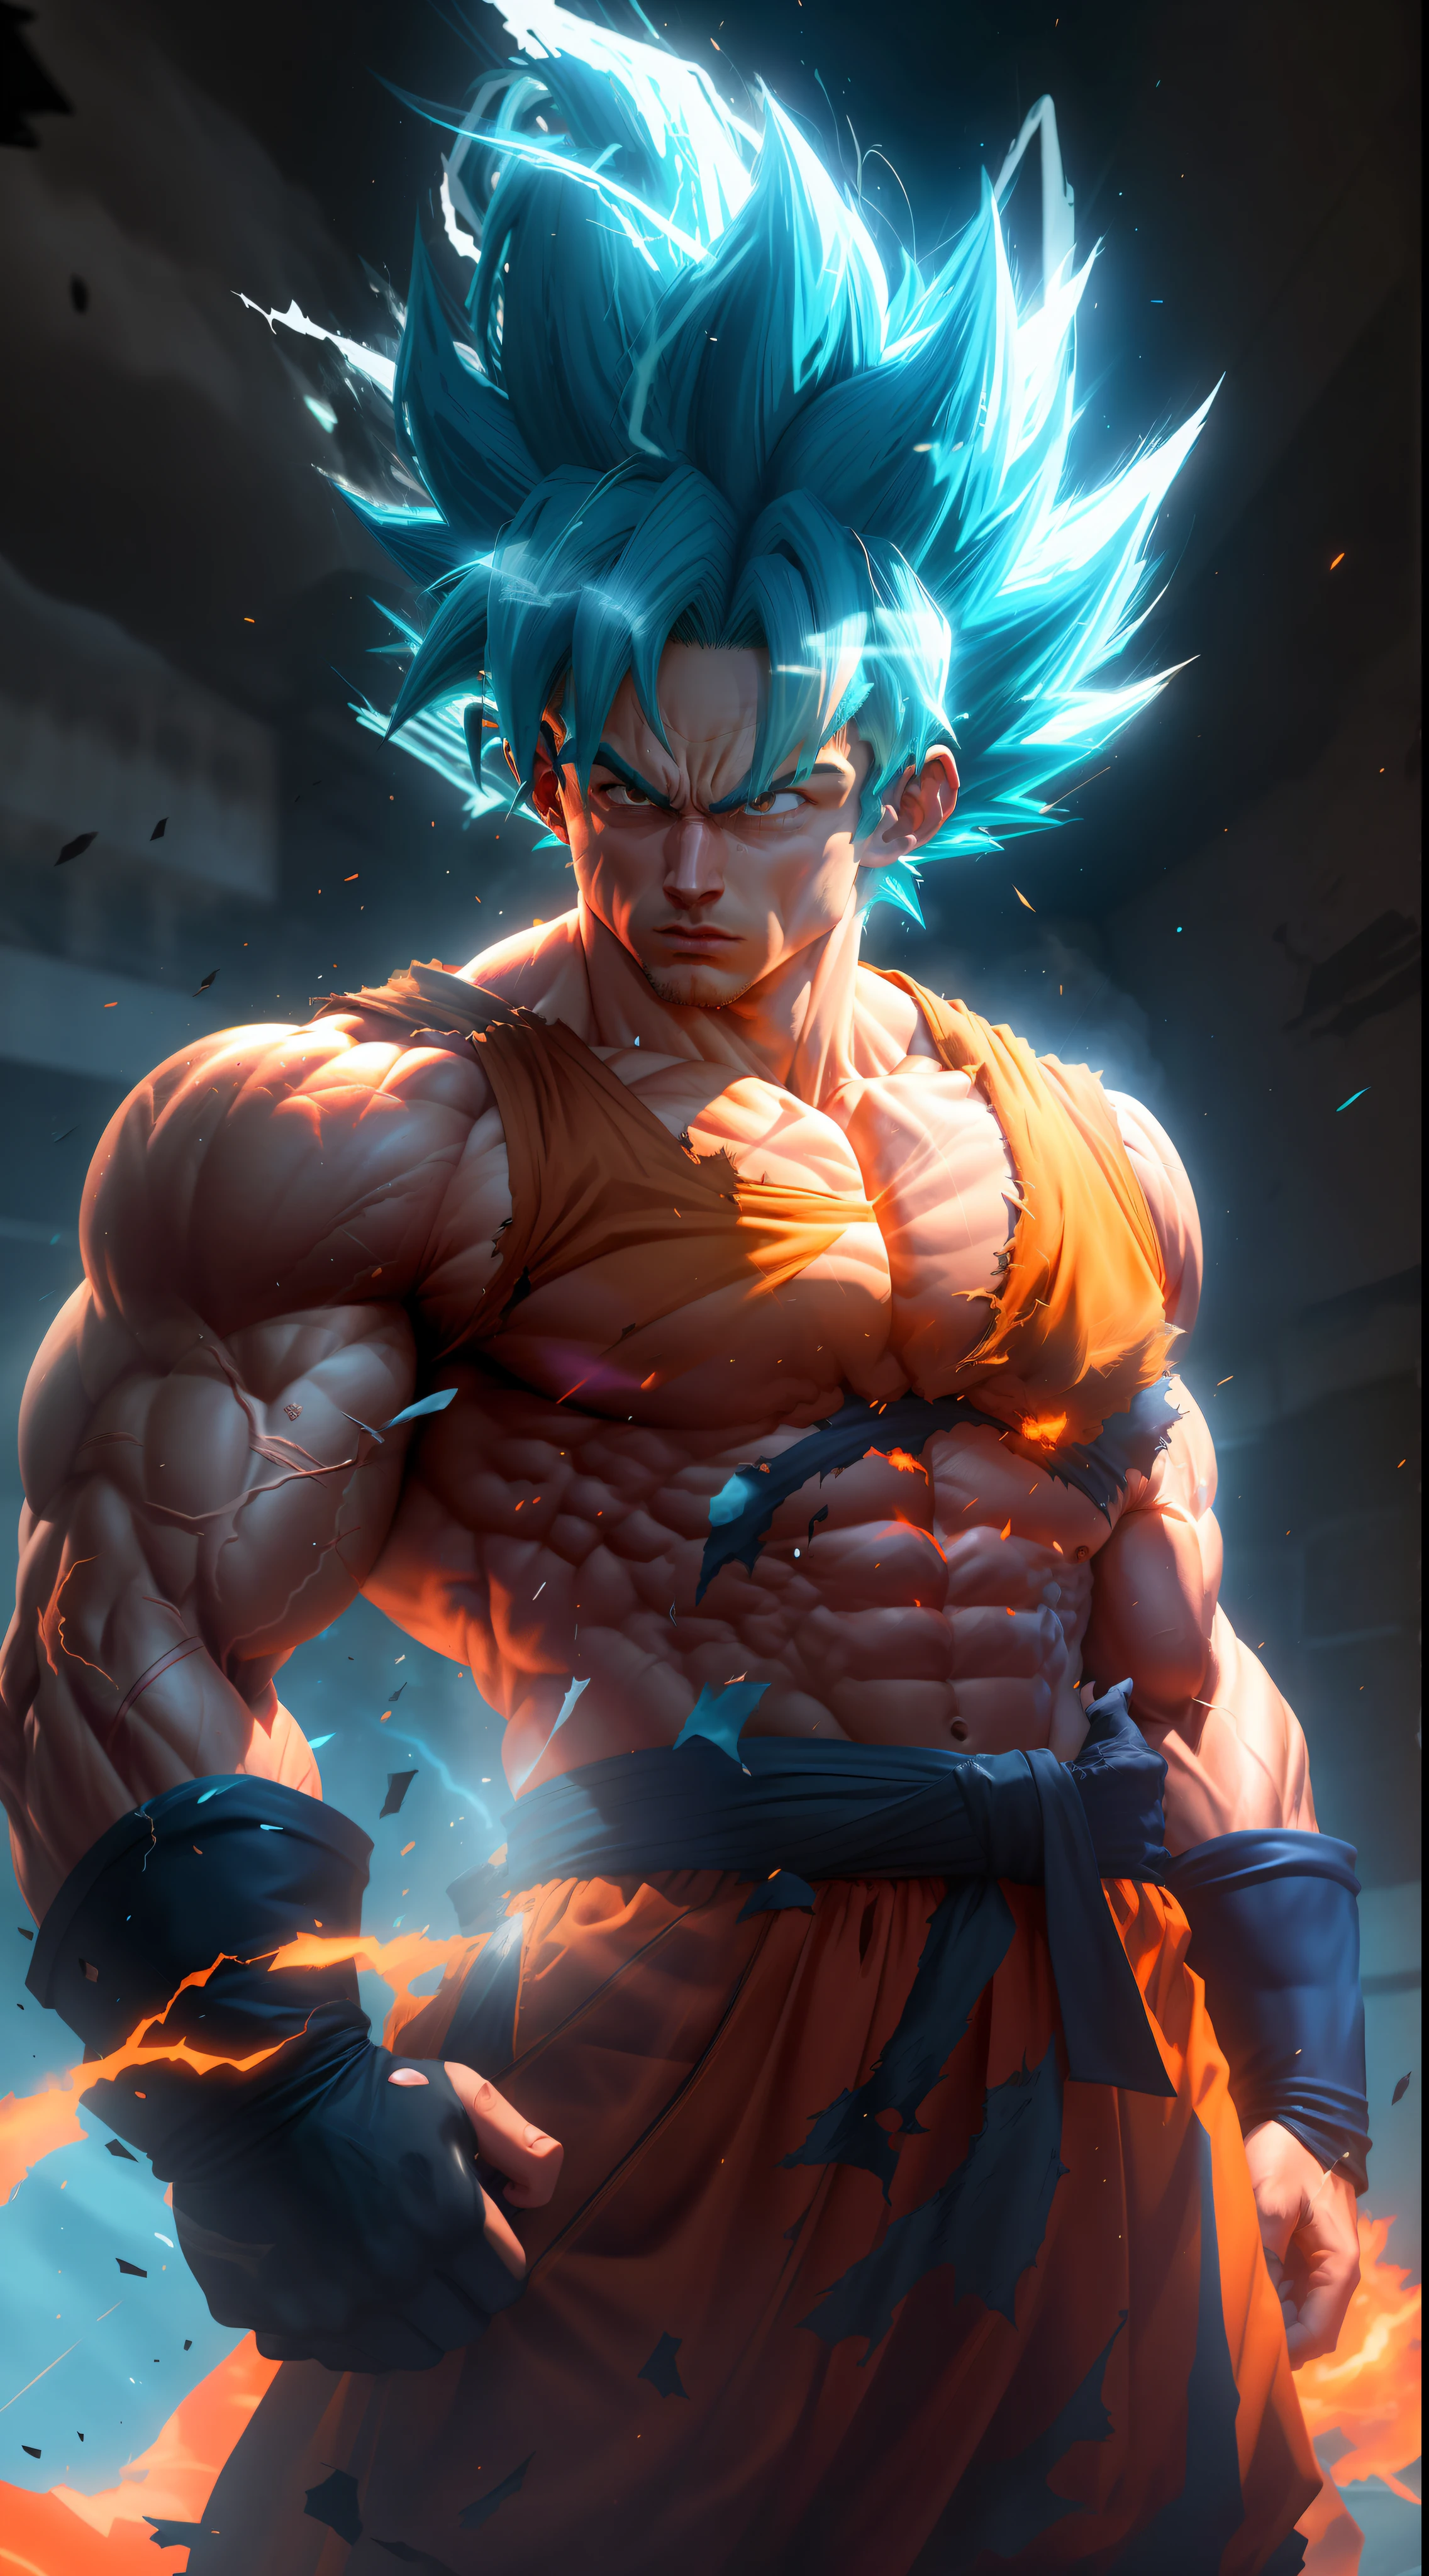 Goku super saiyan, 非常に筋肉質のネオンブルーの髪を持つ成人男性, 静脈でいっぱいの定義された筋肉, 完全に引き裂かれた濃いオレンジ色の服, 白い手袋, 真剣な顔, 筋肉の定義, 大きな肩, 丸みを帯びた上腕二頭筋, アンリアルエンジン5.8k.